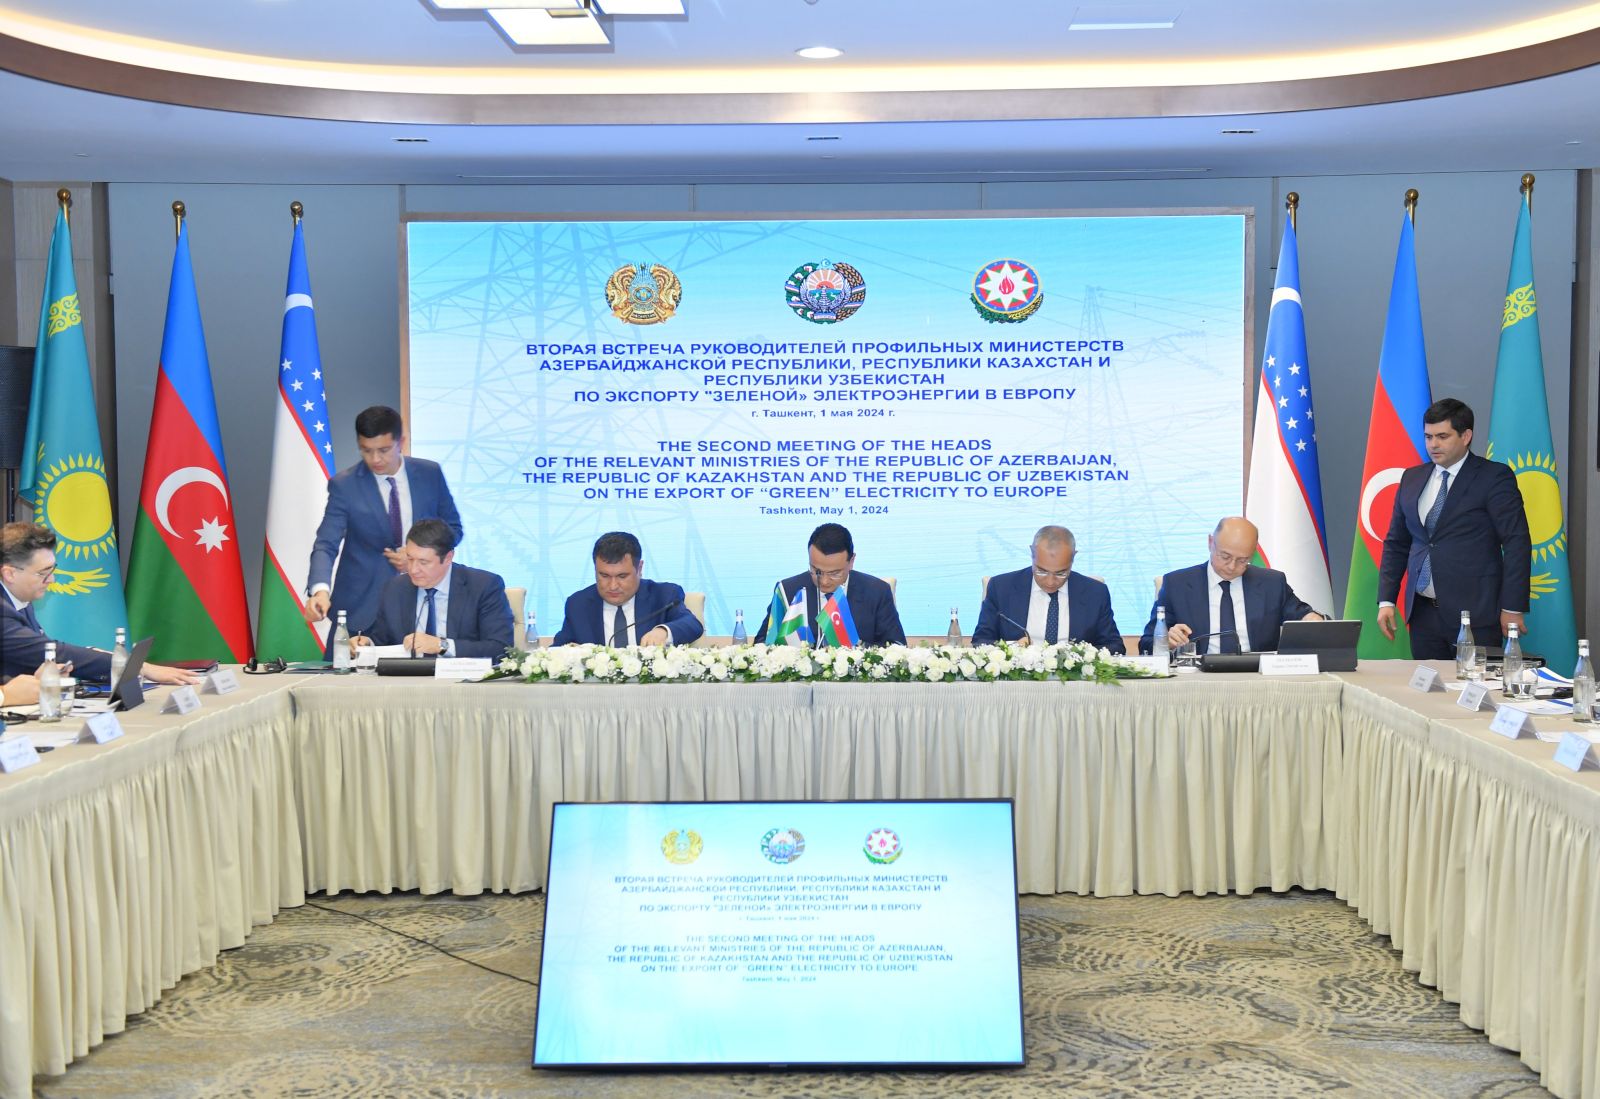 Qazaxıstan, Azərbaycan və Özbəkistan enerji sistemlərini birləşdirir